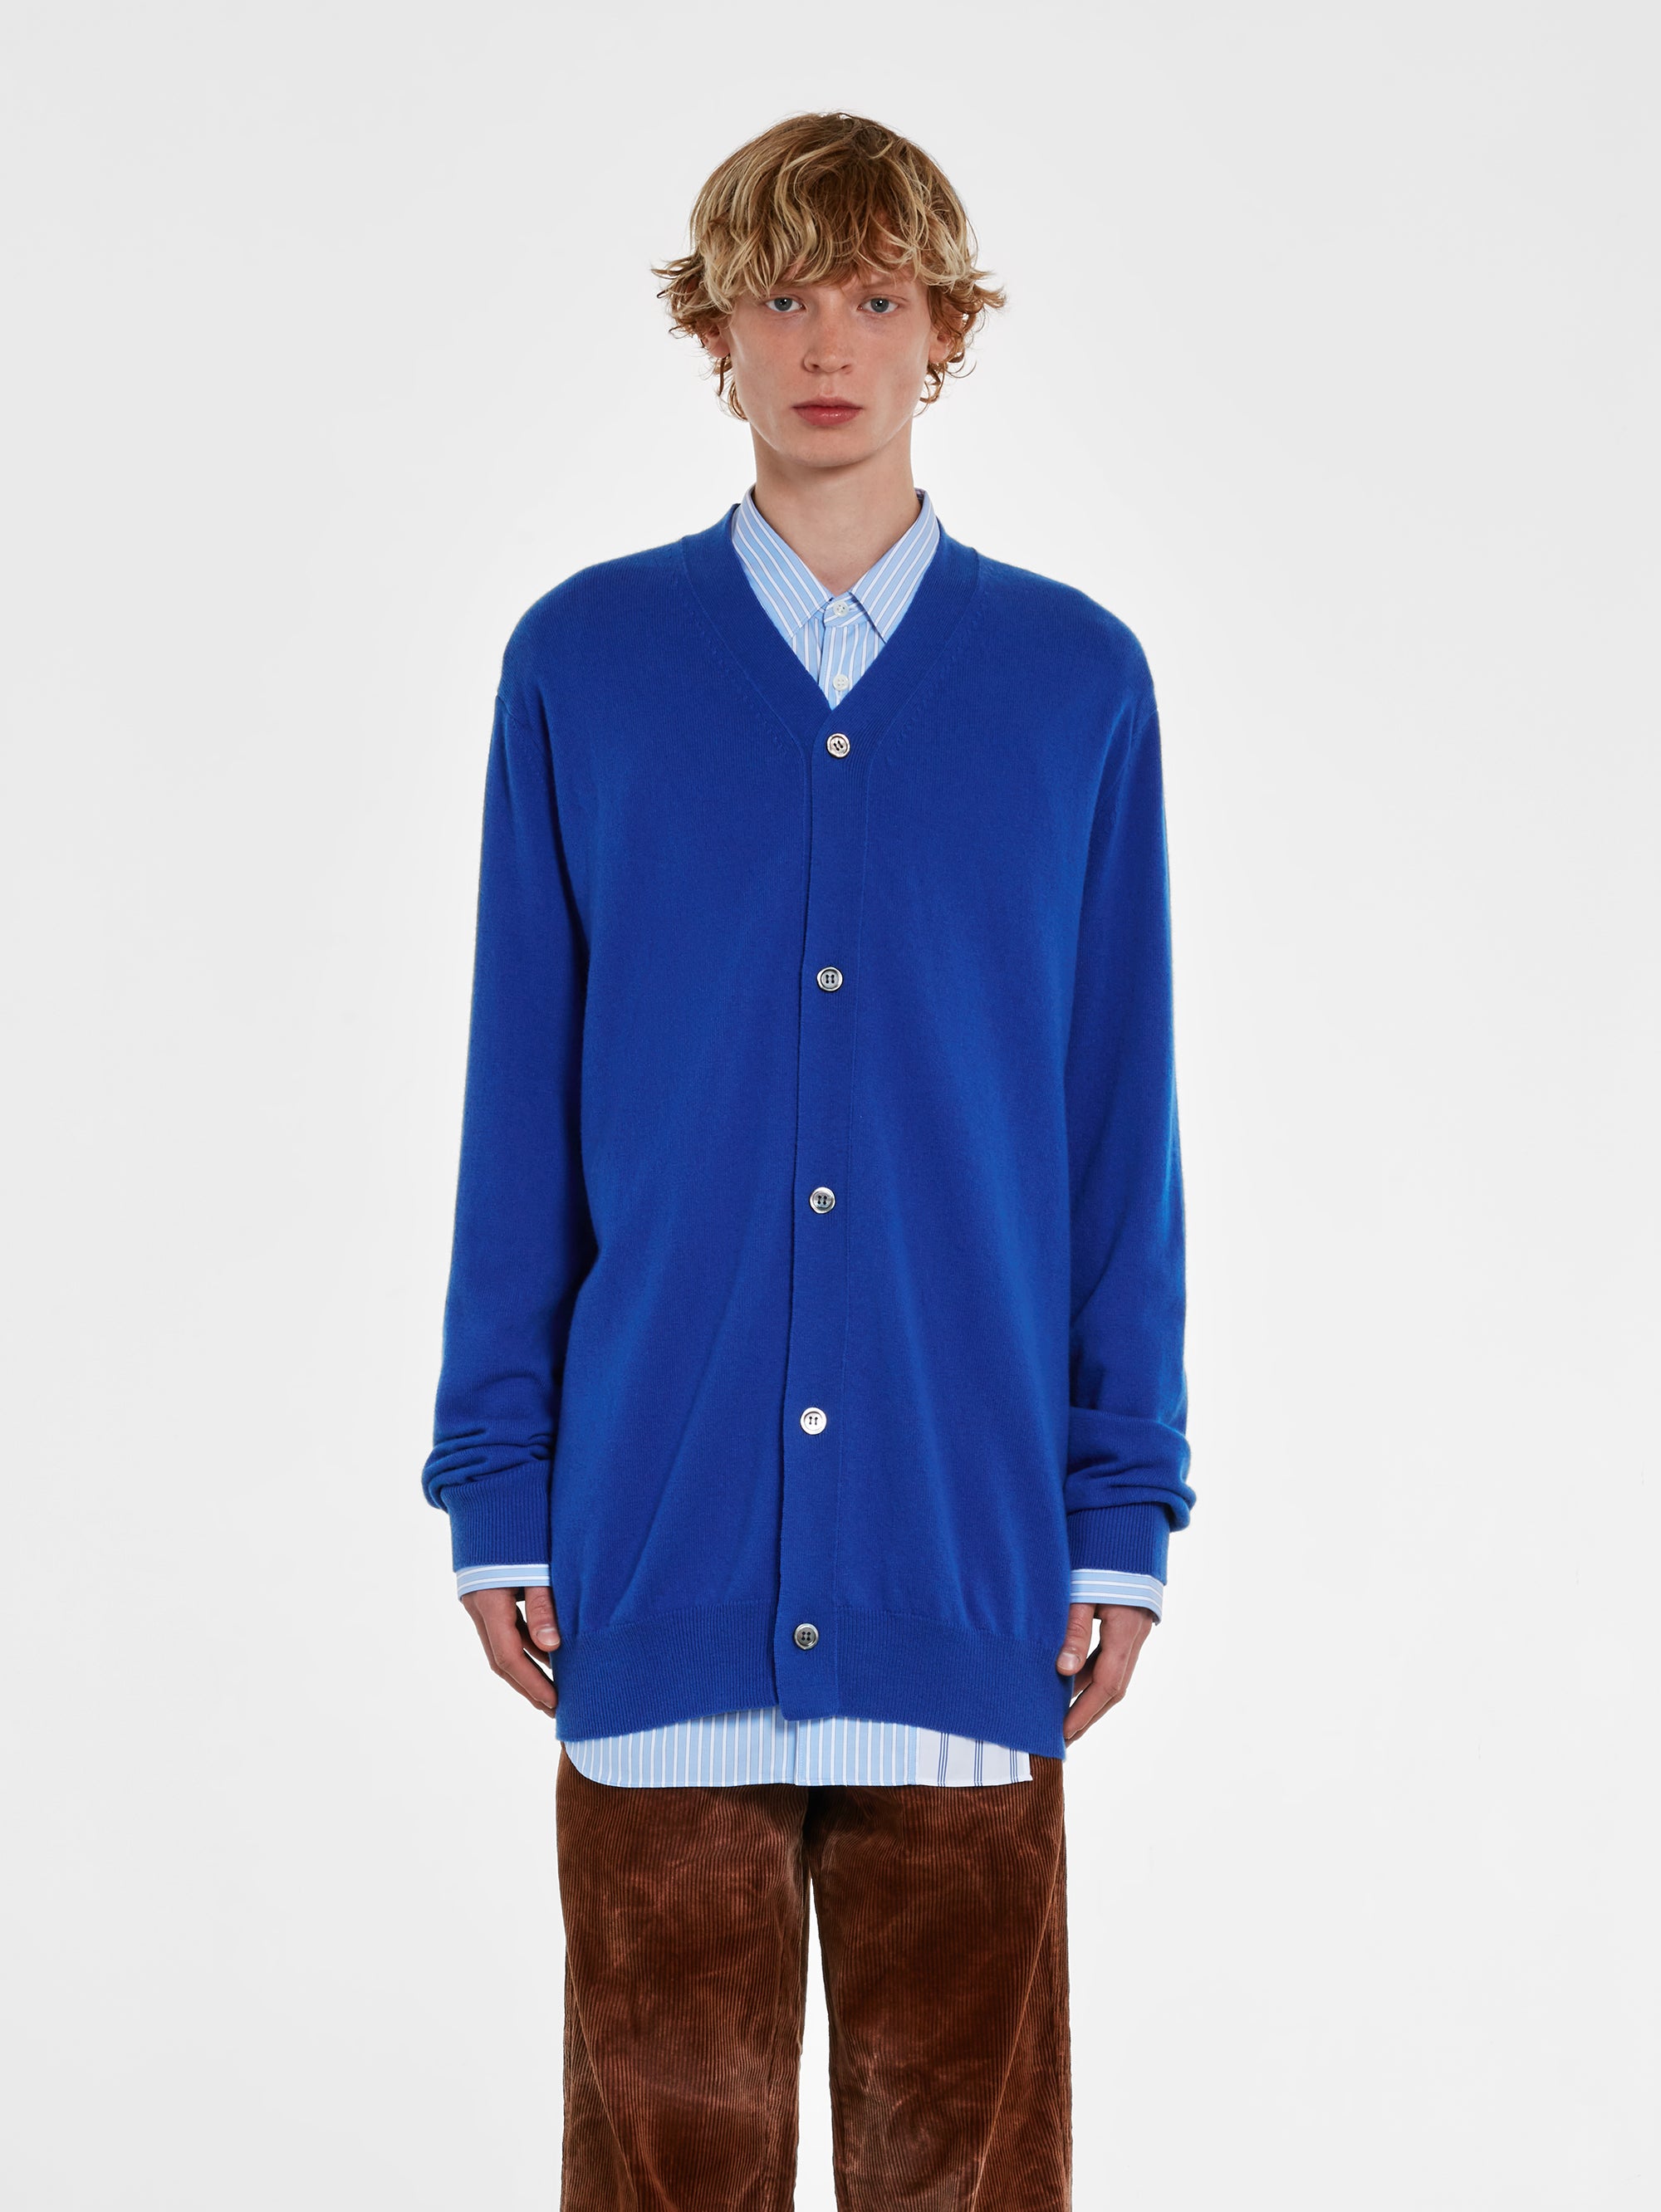 CDG Shirt - Men's Wool Cardigan - (Blue) view 1